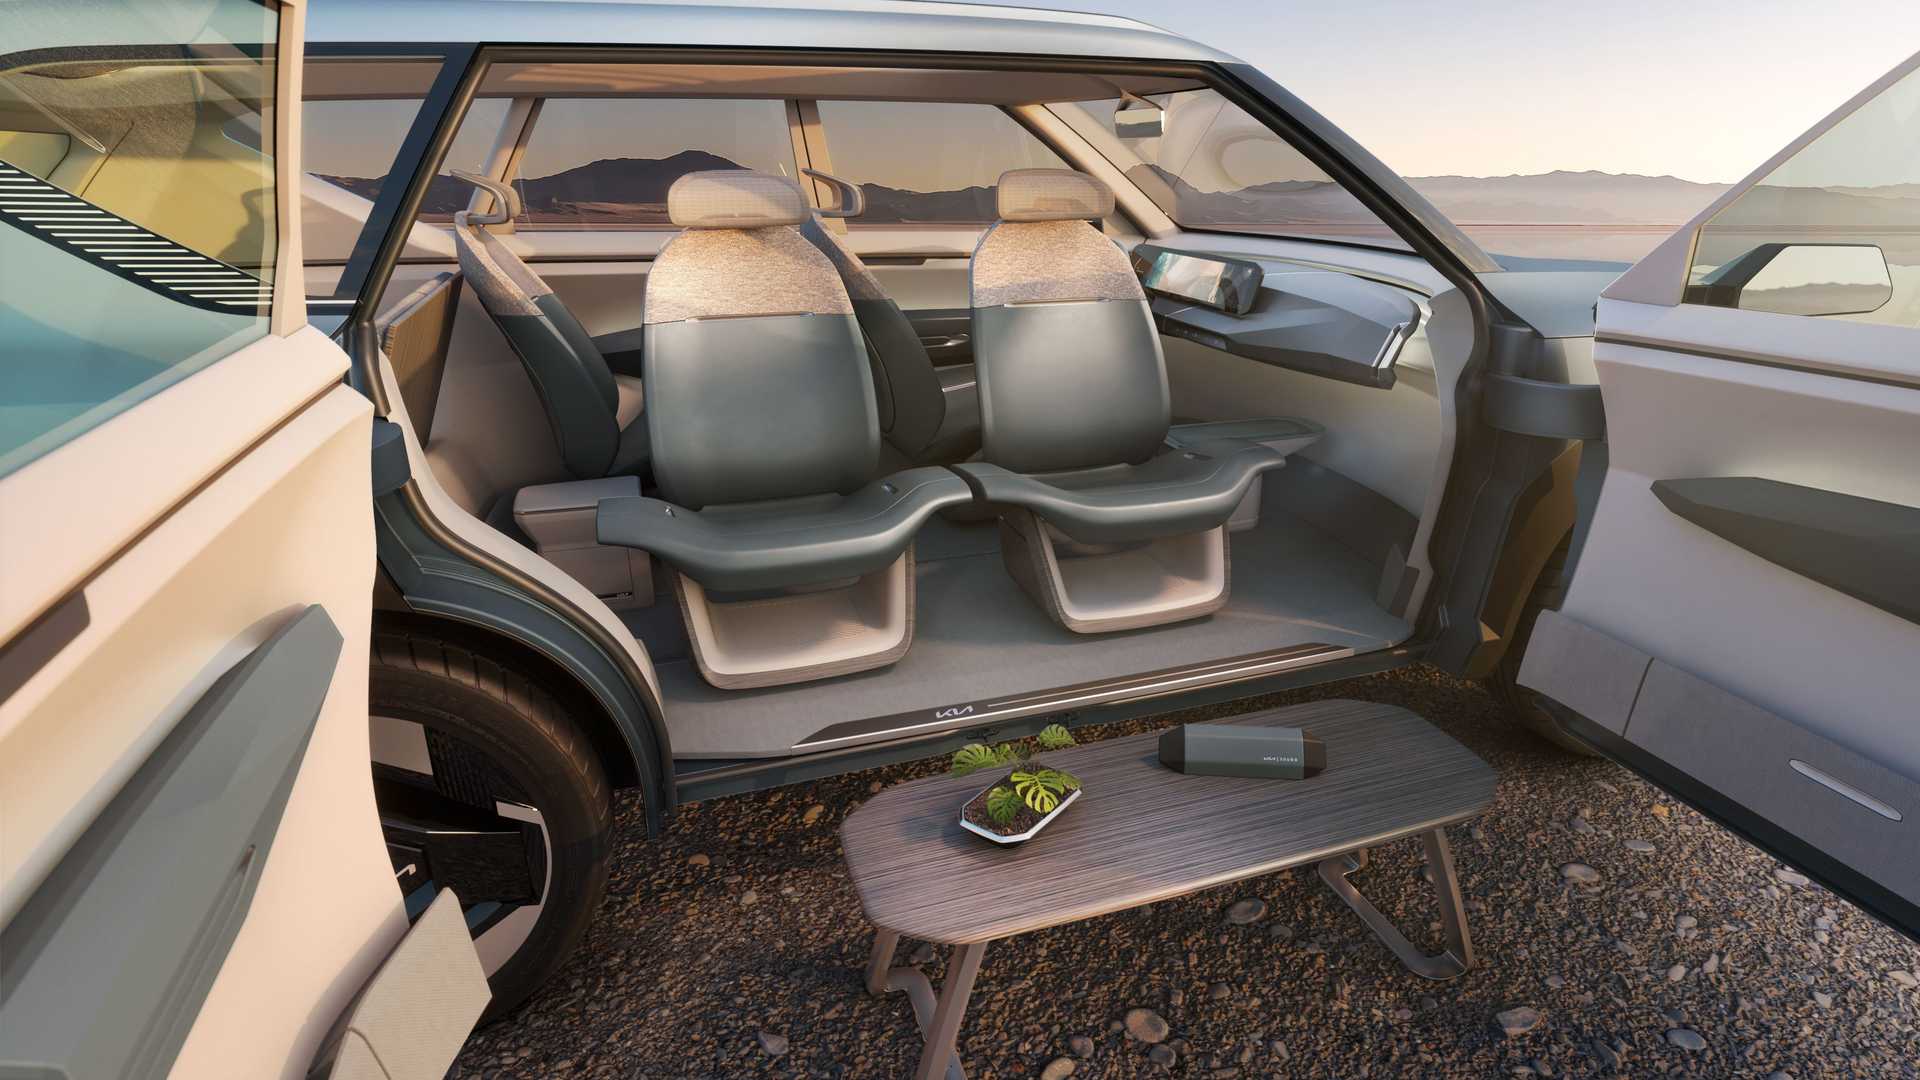 كيا EV5 الجديدة هي أحدث سيارة كهربائية للعلامة بتصميم عضلي وداخلية عصرية 26